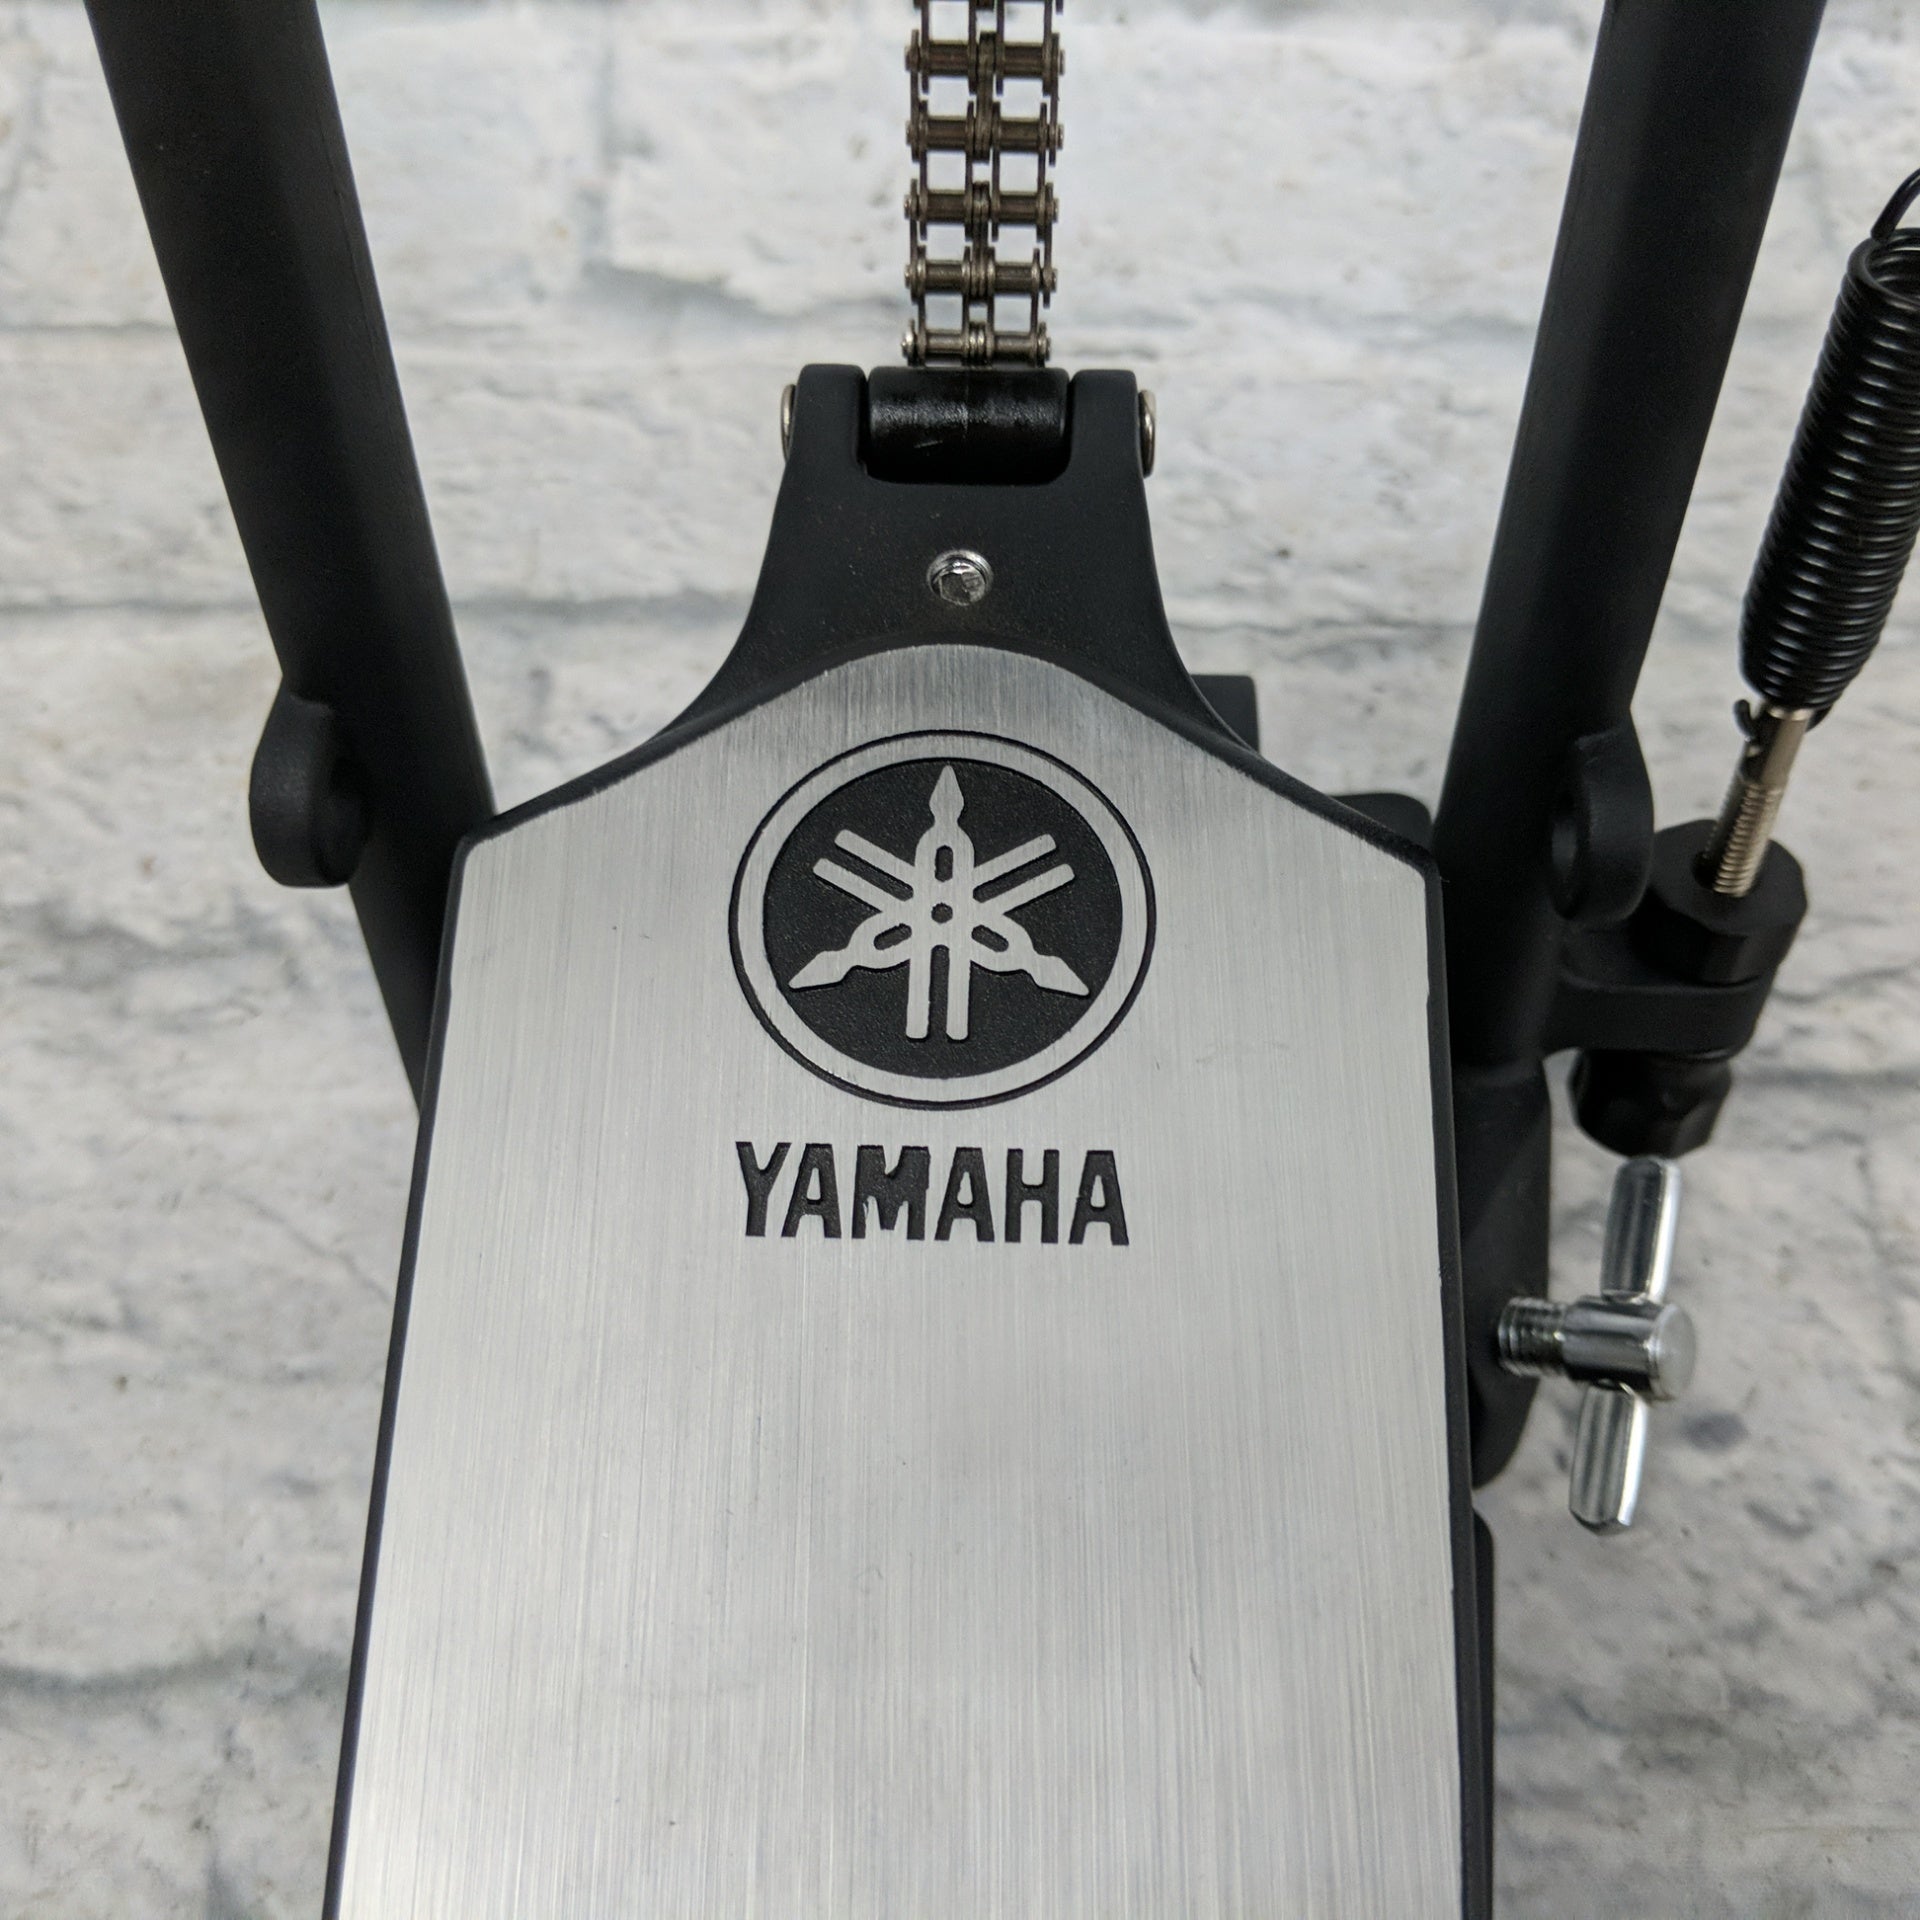 Yamaha FP8500C Double Chain Drive Kick Drum Pedal W/Case